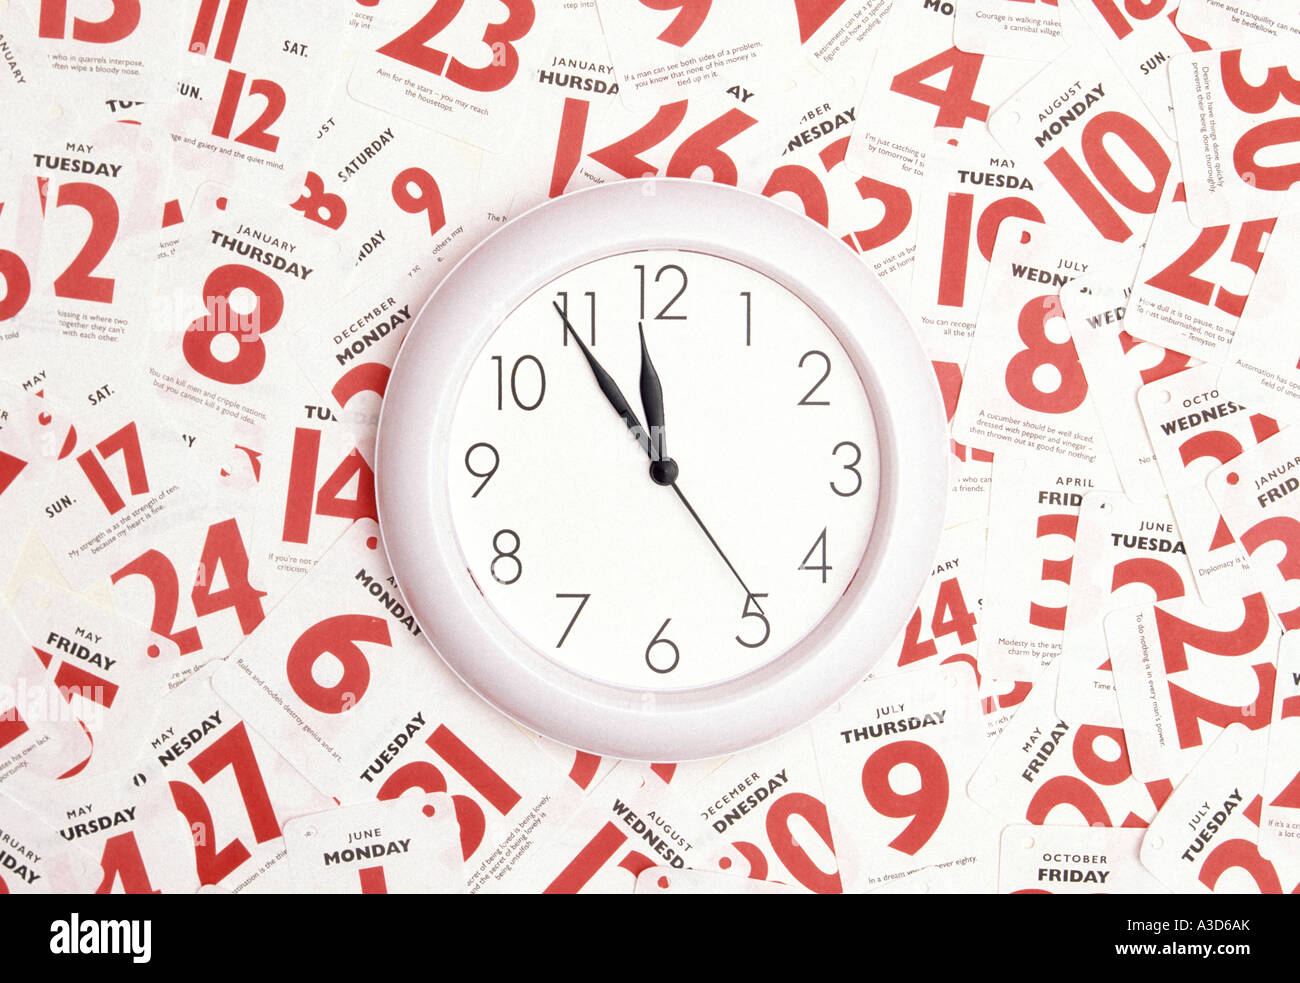 Data e ora calendario appuntamento immagine concettuale utilizzando il  quadrante dell'orologio e le date rosse della settimana mese e anno come  concetto per le persone che cercano di gestire una vita intensa